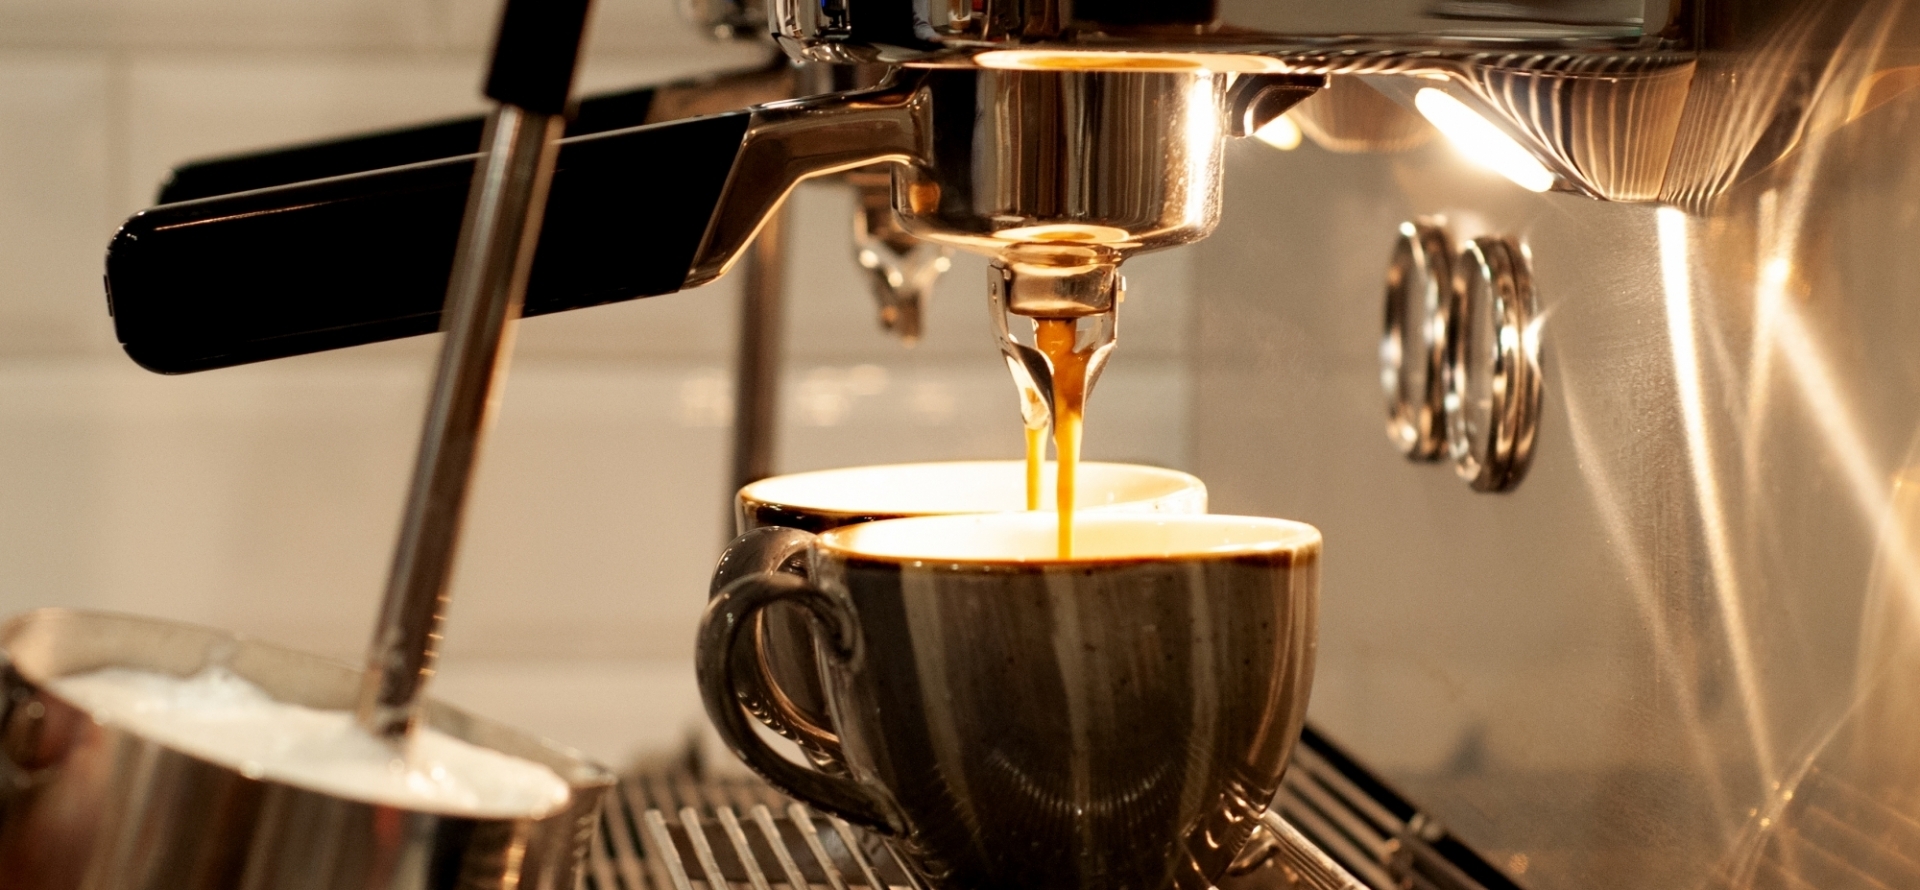 „Mit Kaffee und Humor kommt man dem Stress zuvor." - Willy Meurer

Frischer Fairtrade-Kaffee in vielen Varianten - im Bistro genießen
oder auch zum Mitnehmen im Recup-Becher.
